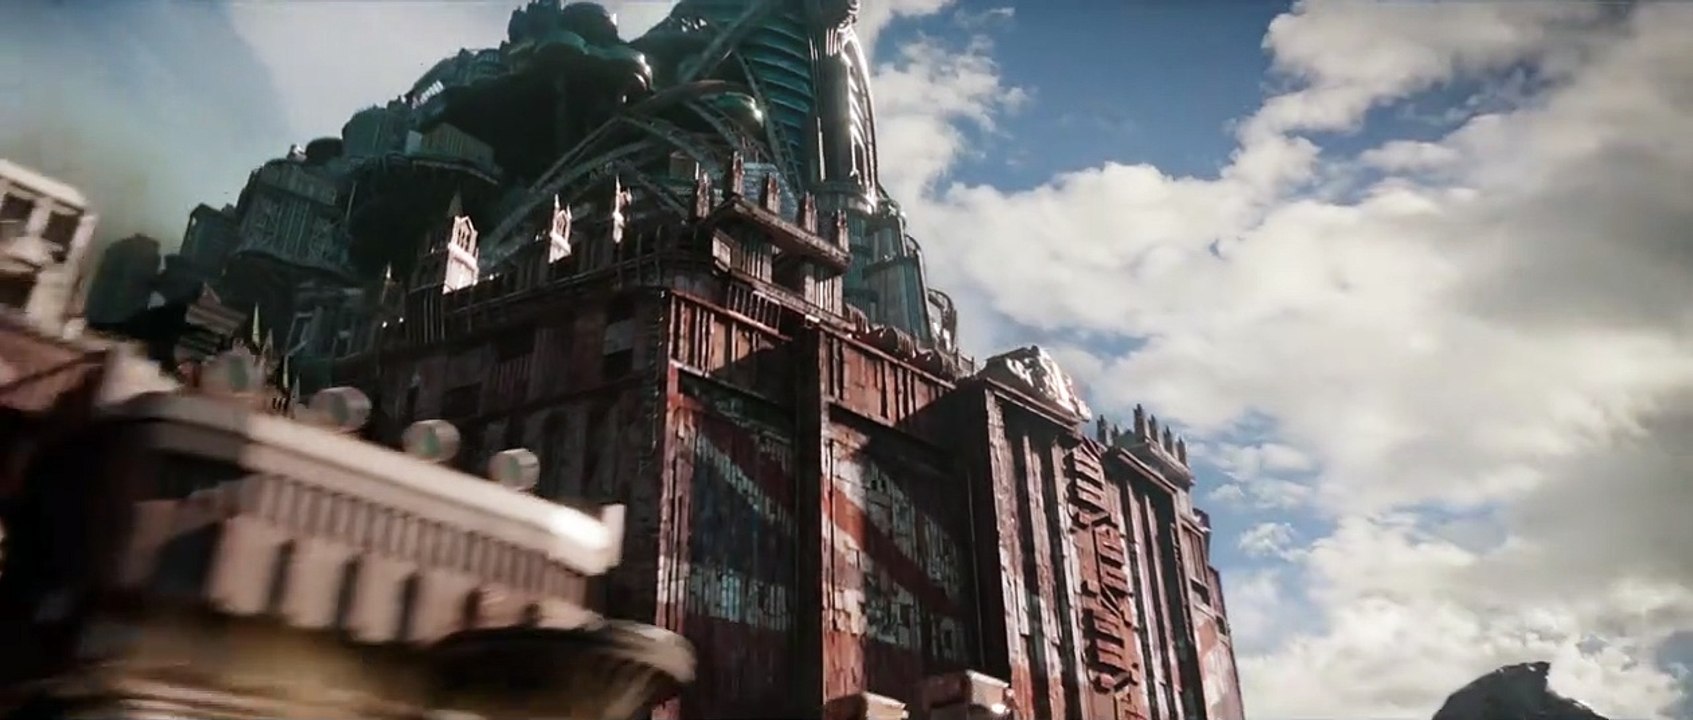 Mortal Engines: Krieg der Städte Trailer (2) DF